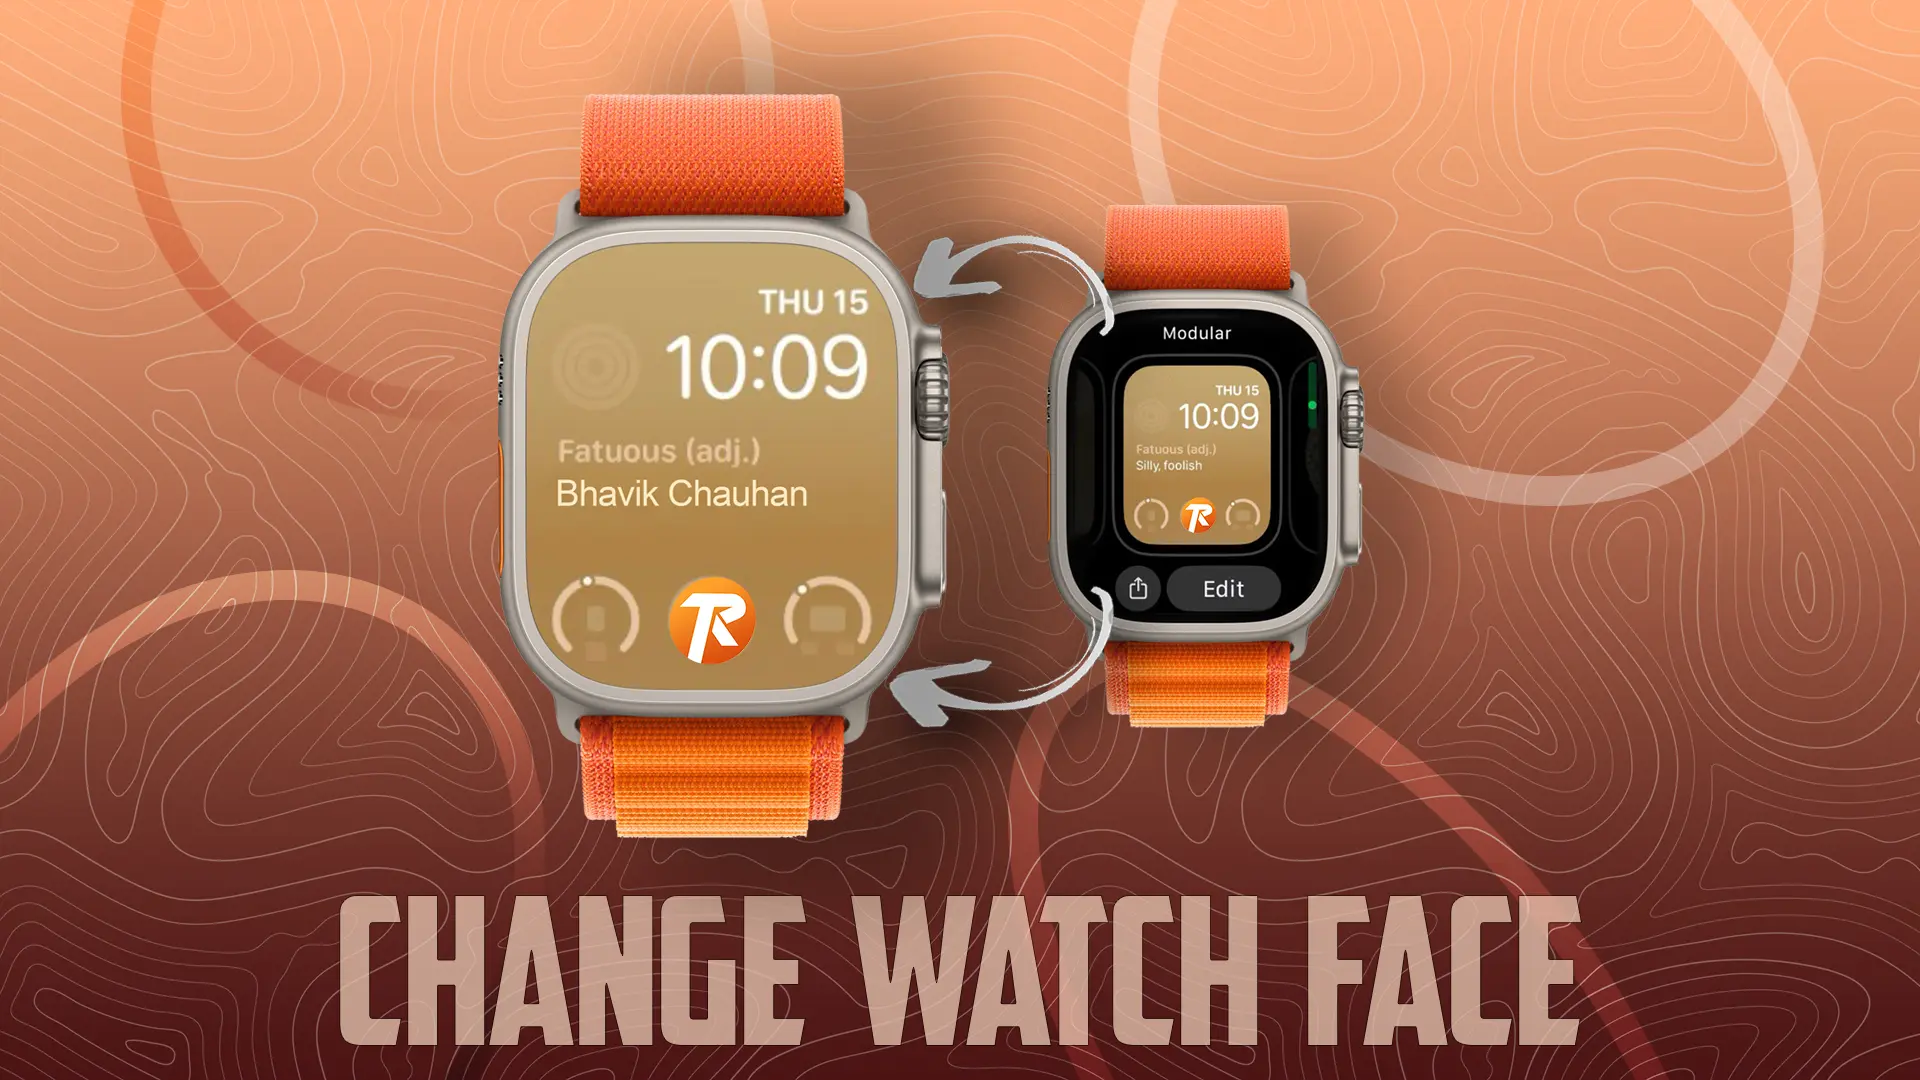 Change Watch Face on Apple Watch in watchOS 10